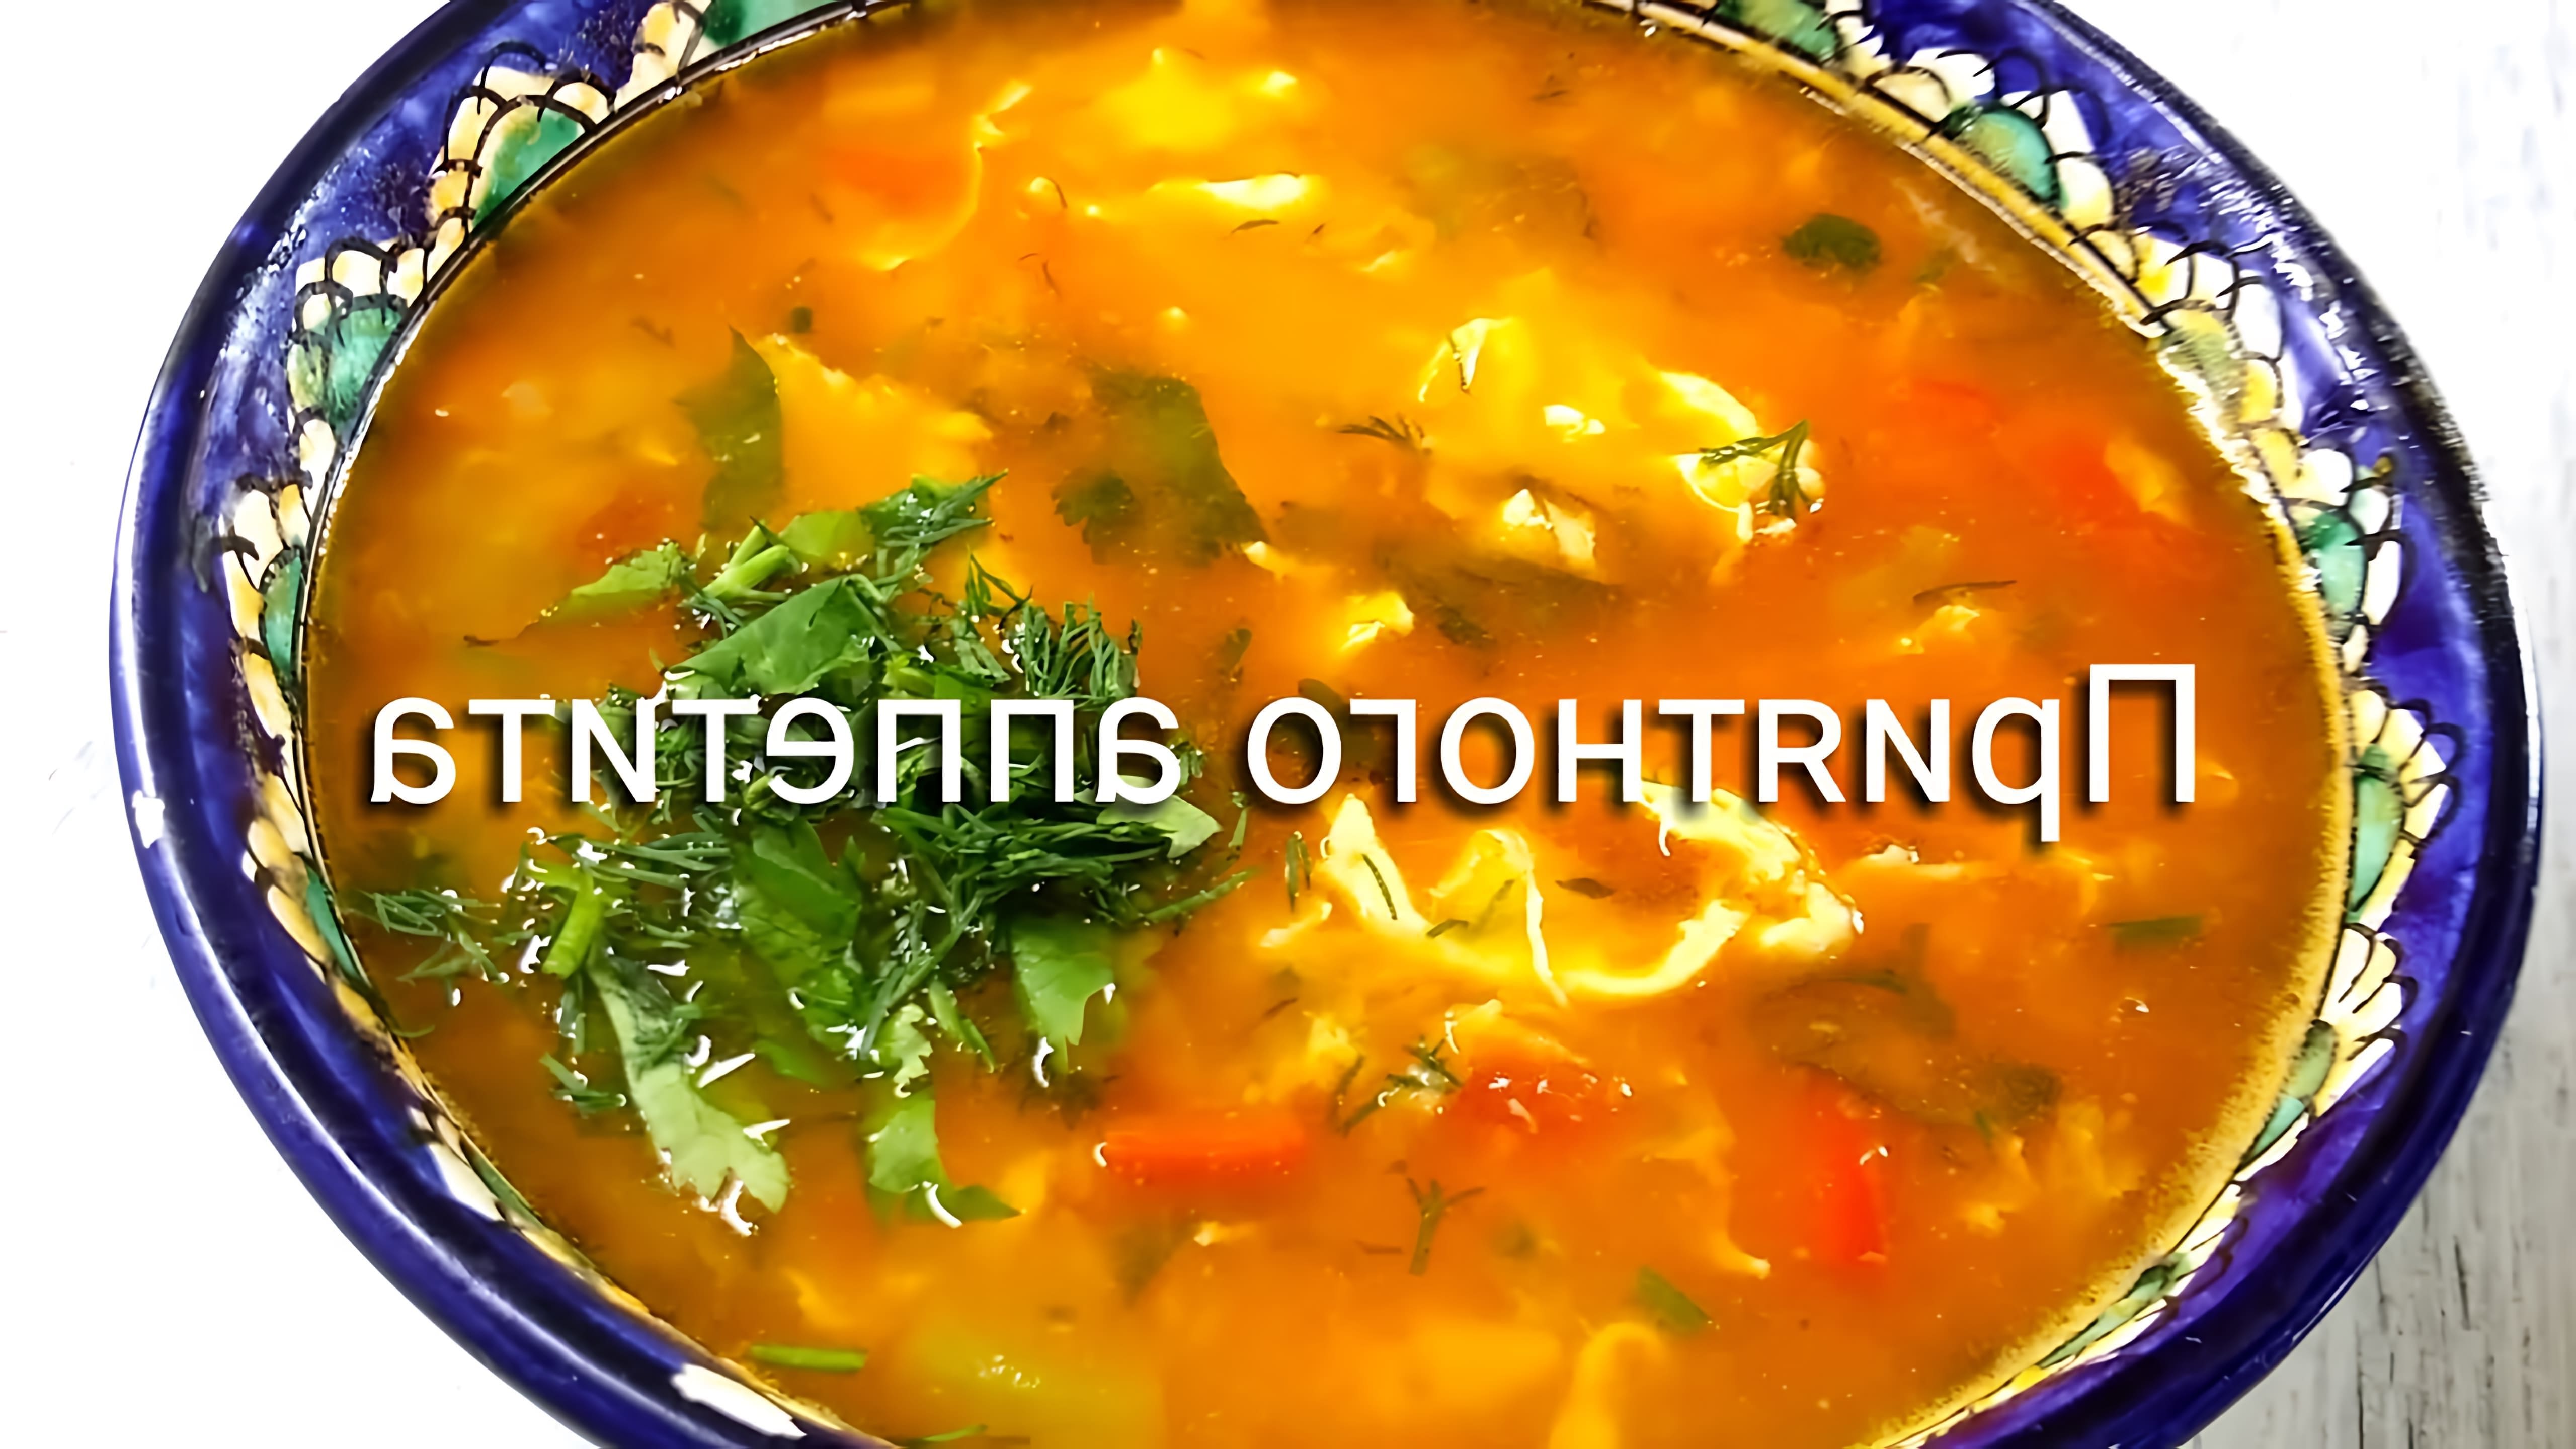 В этом видео-ролике рассказывается о необычном и вкусном супе, который покорил миллионы сердец